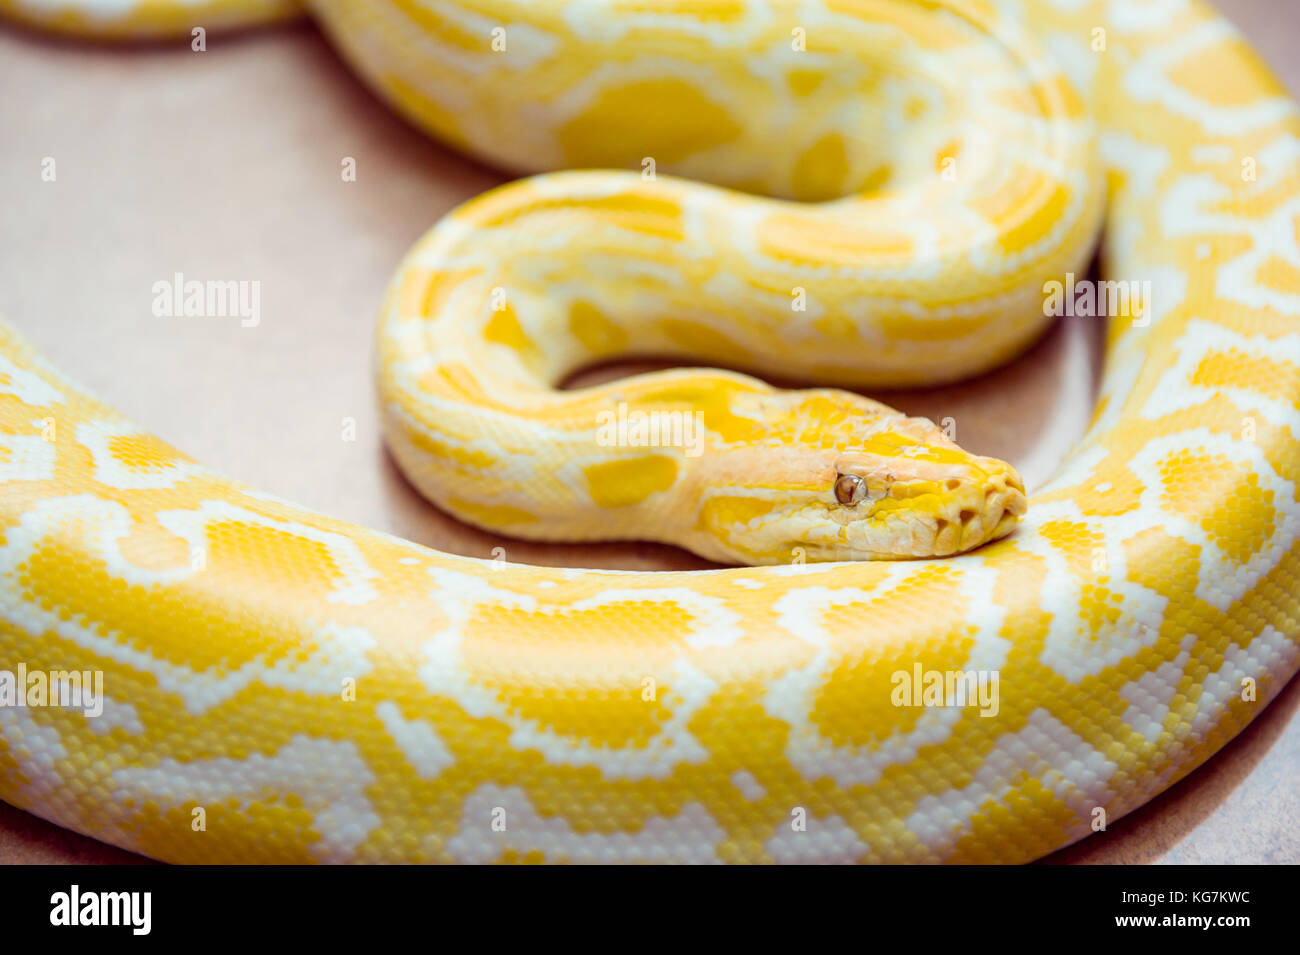 Gold Python Netzpython Python Reticulatus Albino Schlange Mit Schonen Gelben Textur Exotisches Haustier Selektive Konzentrieren Stockfotografie Alamy